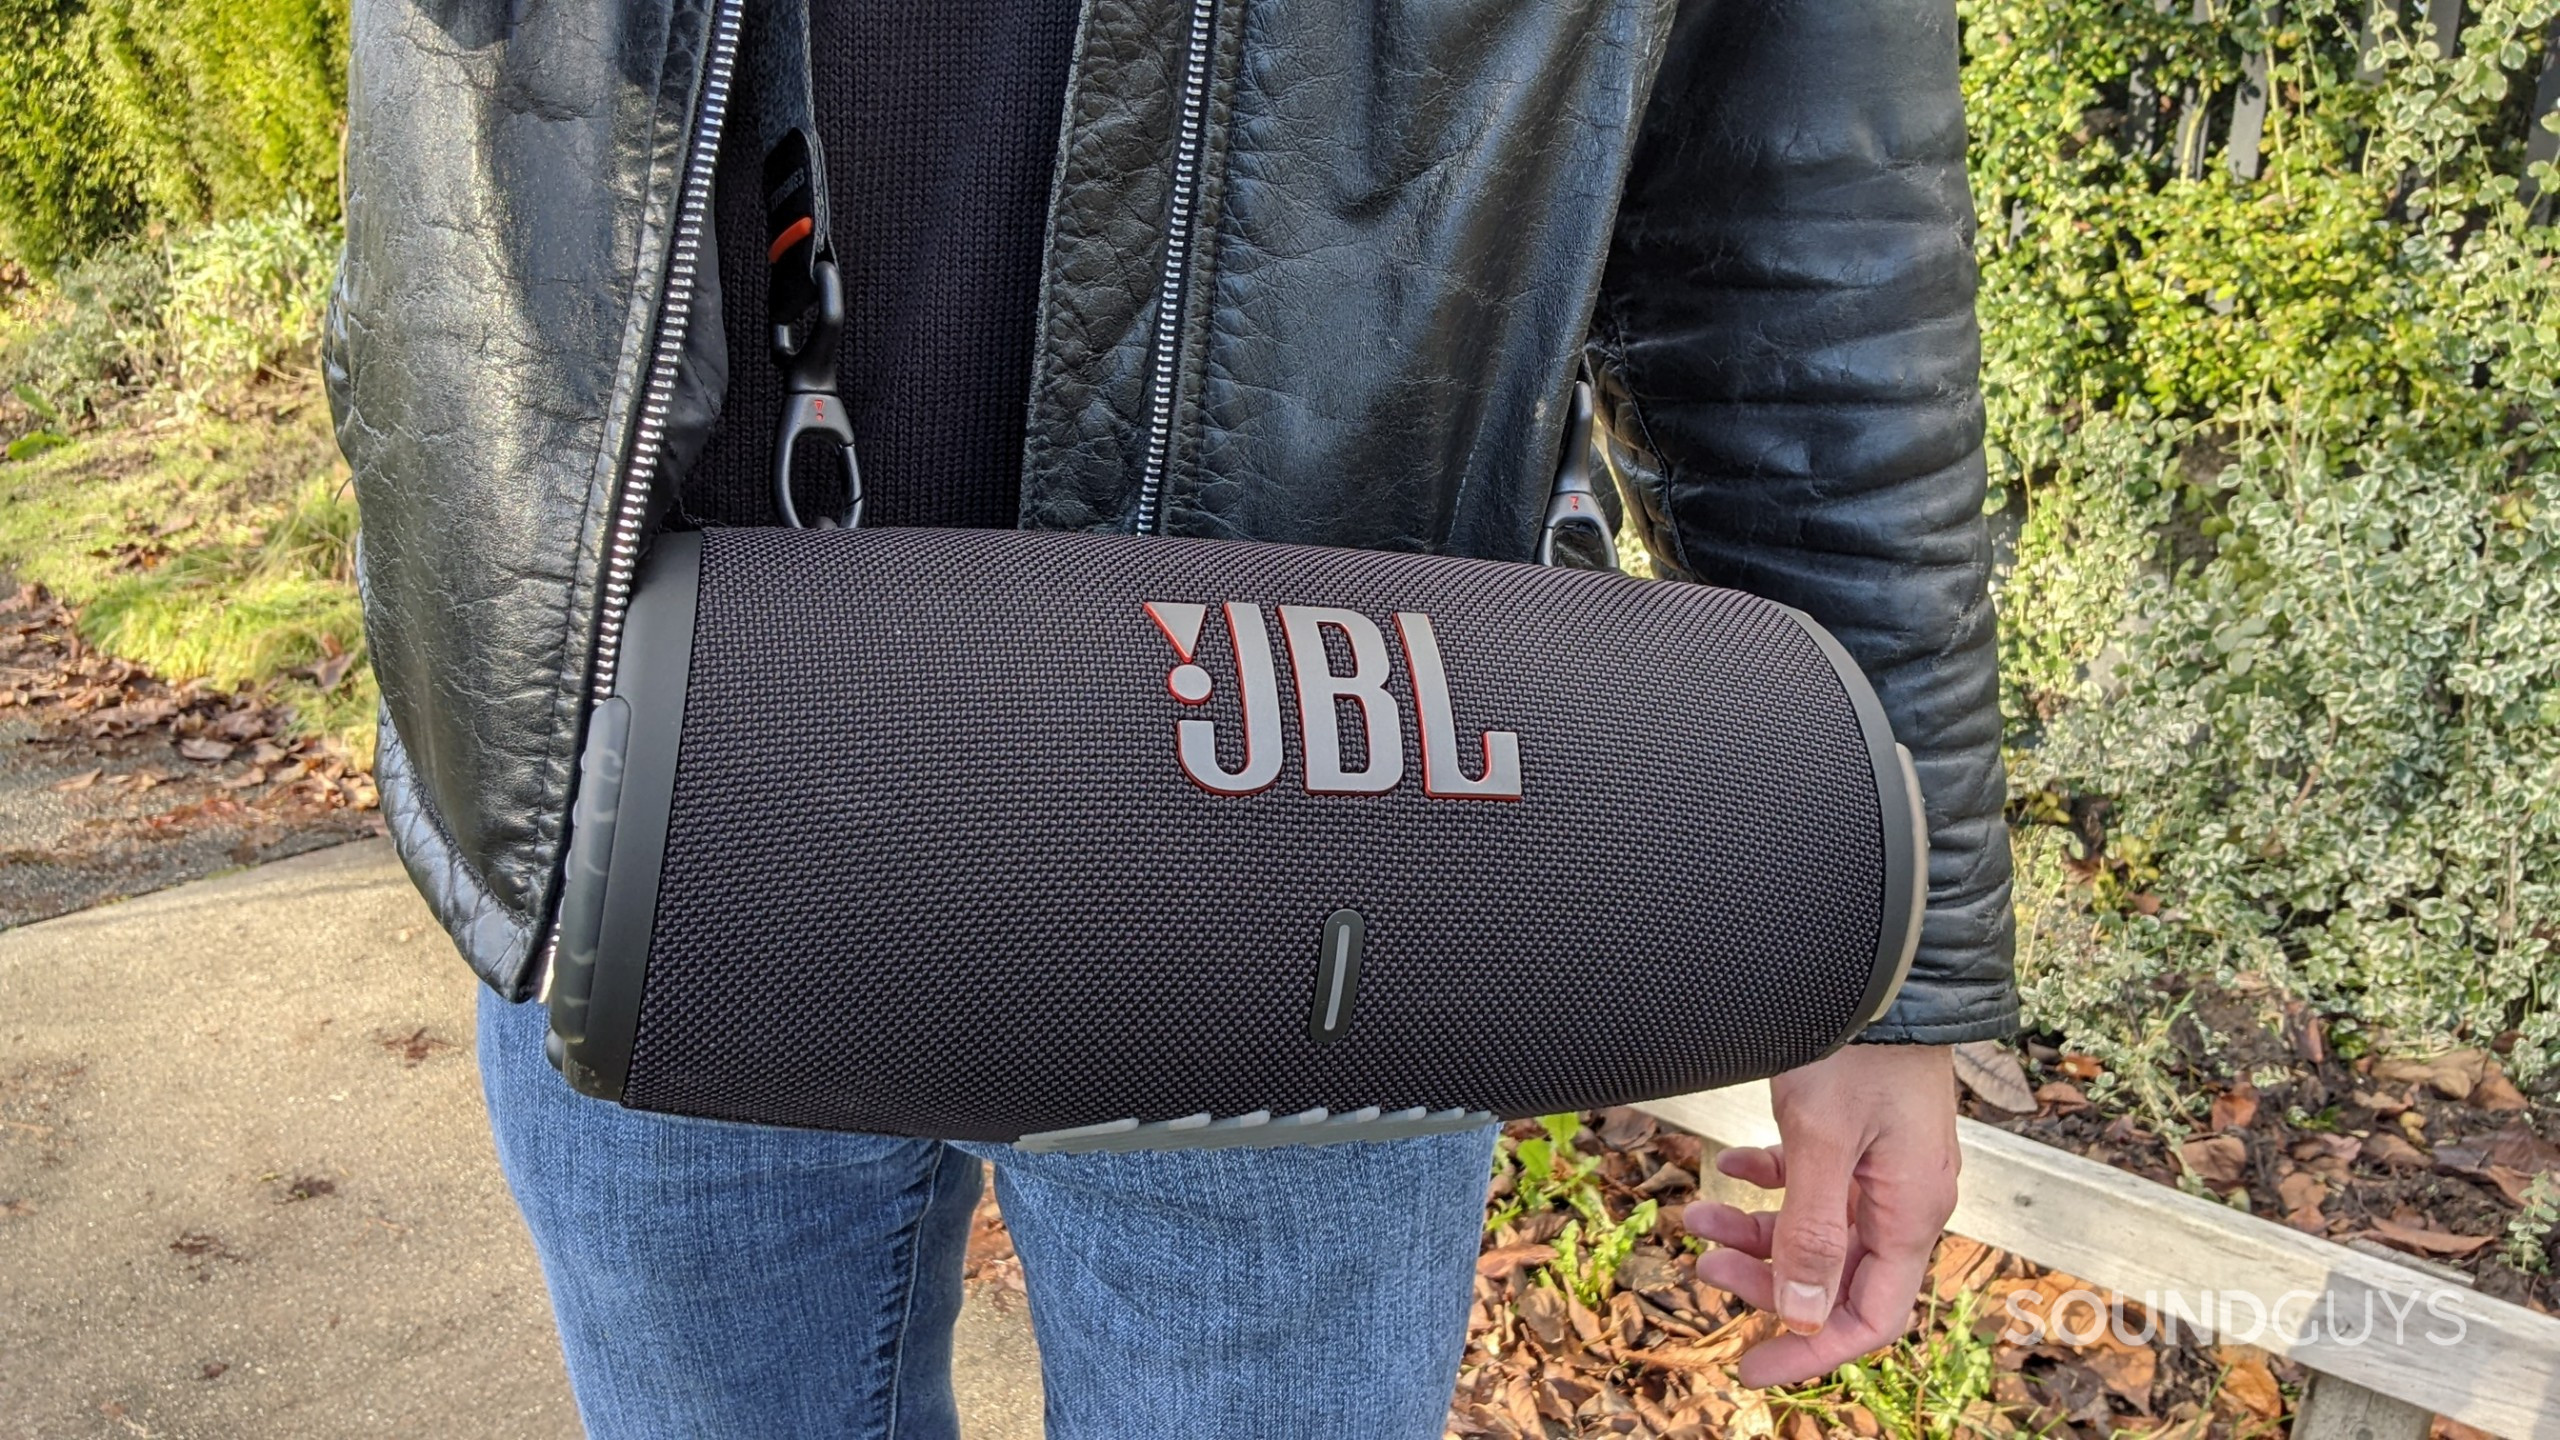 Le haut-parleur Bluetooth JBL Xtreme 3 se porte à l'aide de la sangle de transport attachée sur le devant du torse de la personne.